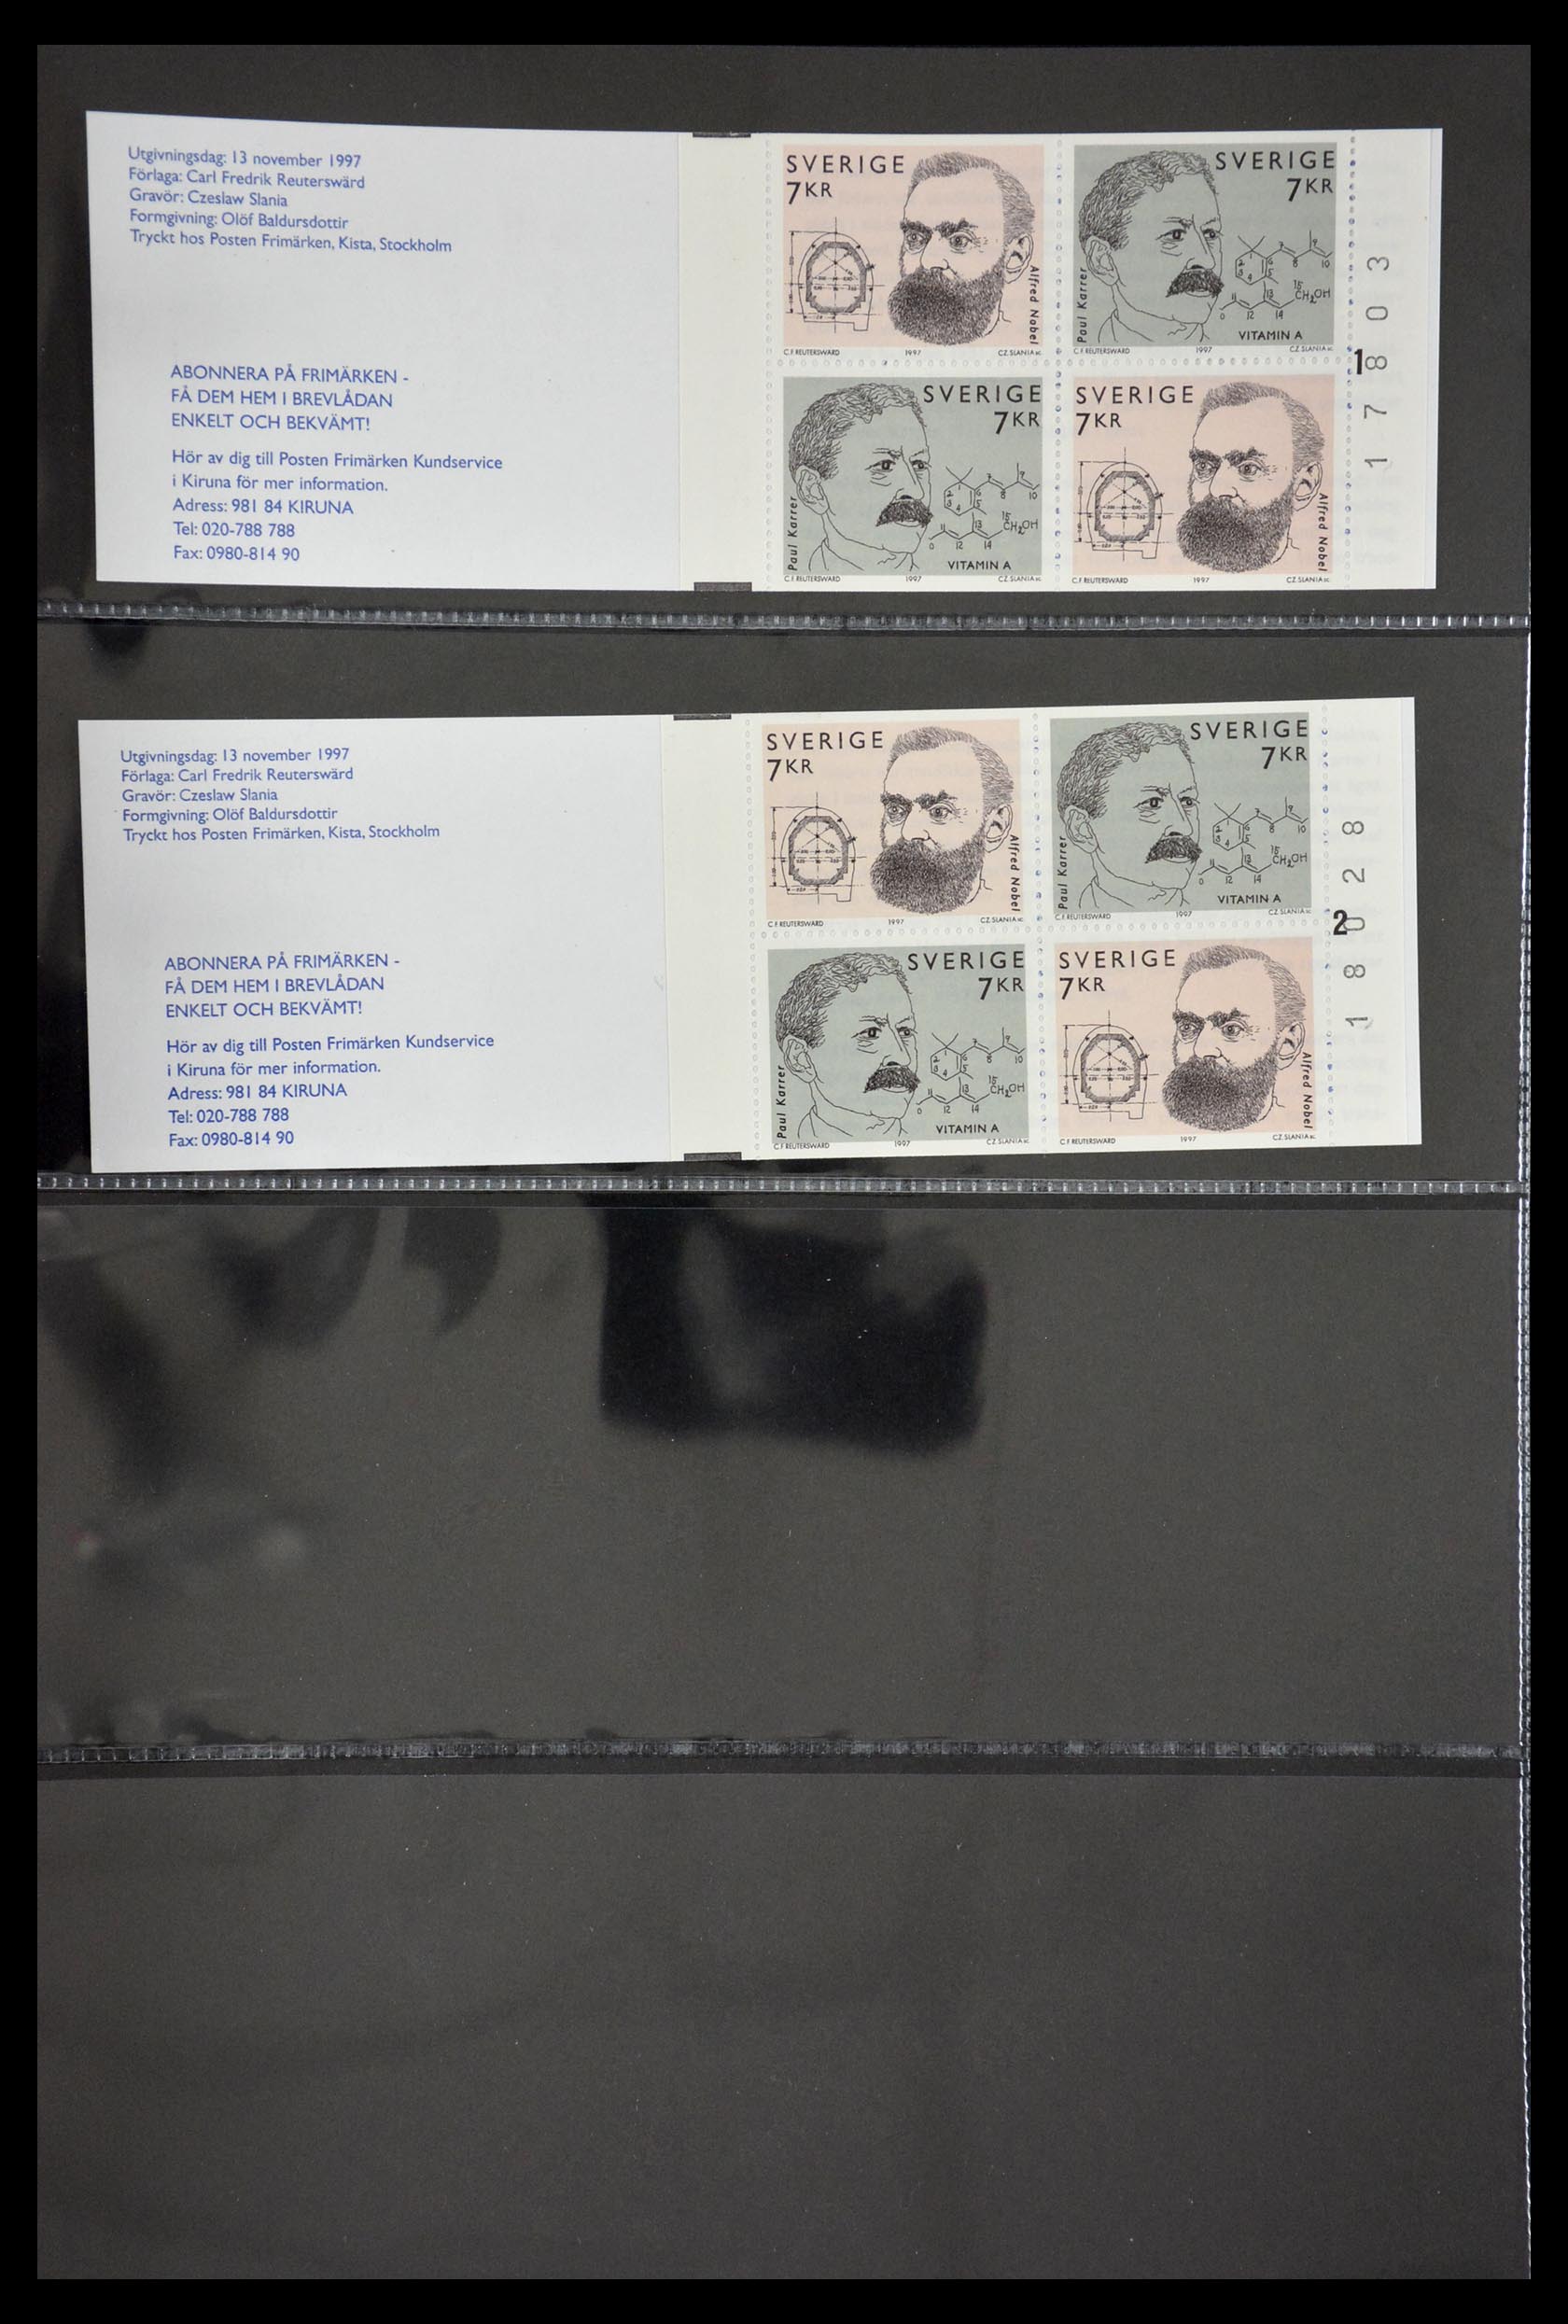 29368 110 - 29368 Sweden stamp booklets 1942-1996.